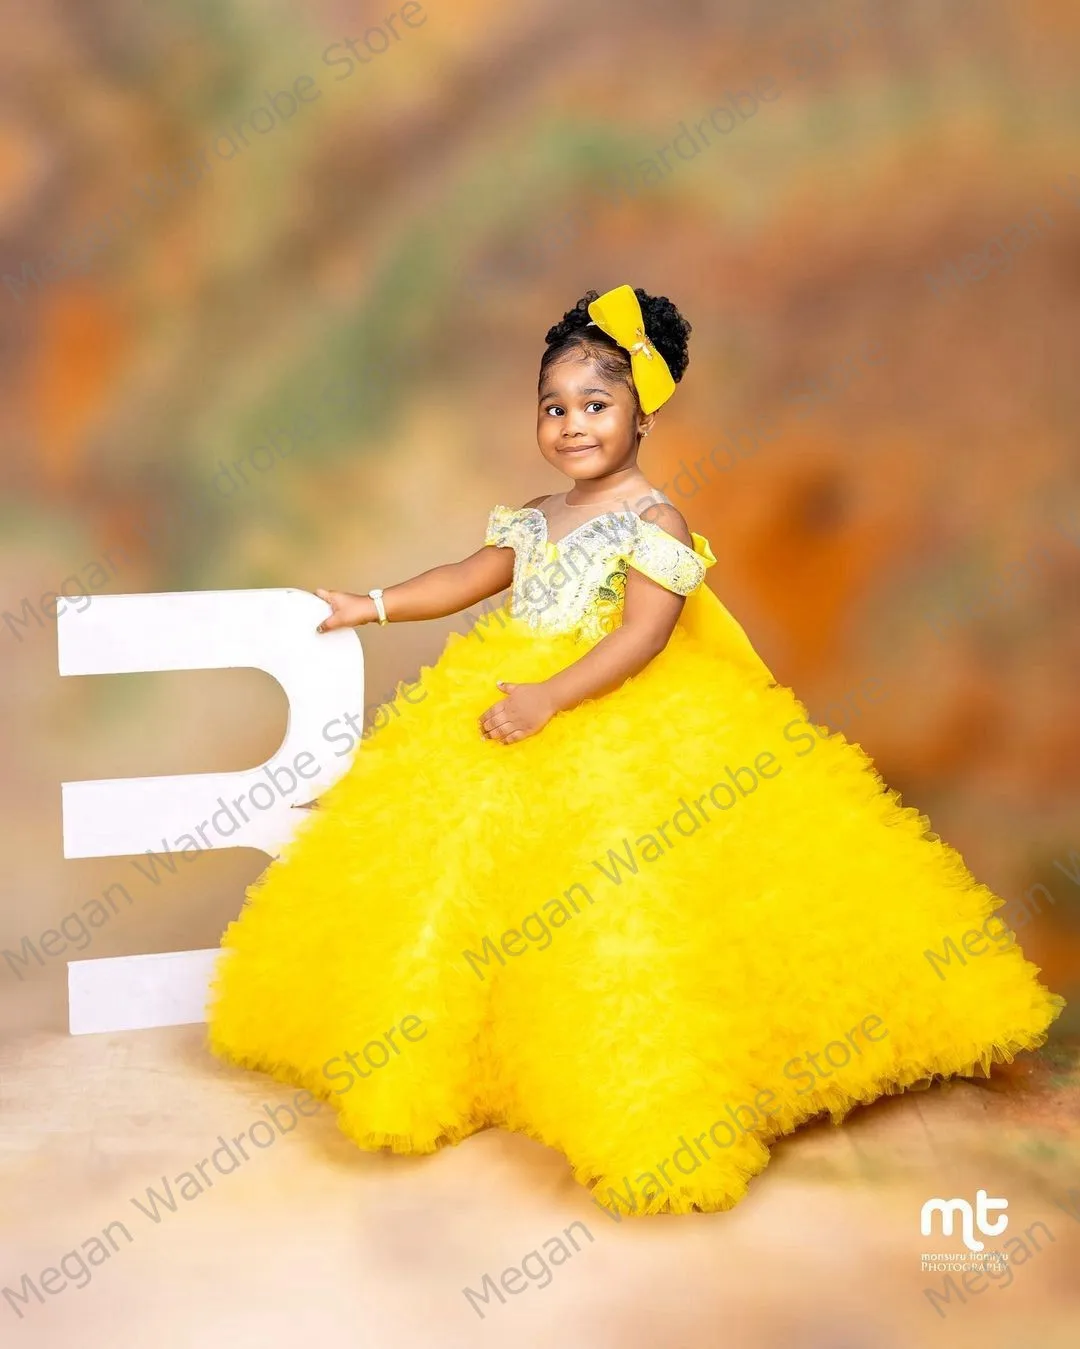 Elegant Dress For Girls, Ball Dress For Girls, Toddlers Dresses, Party -  Afrikrea